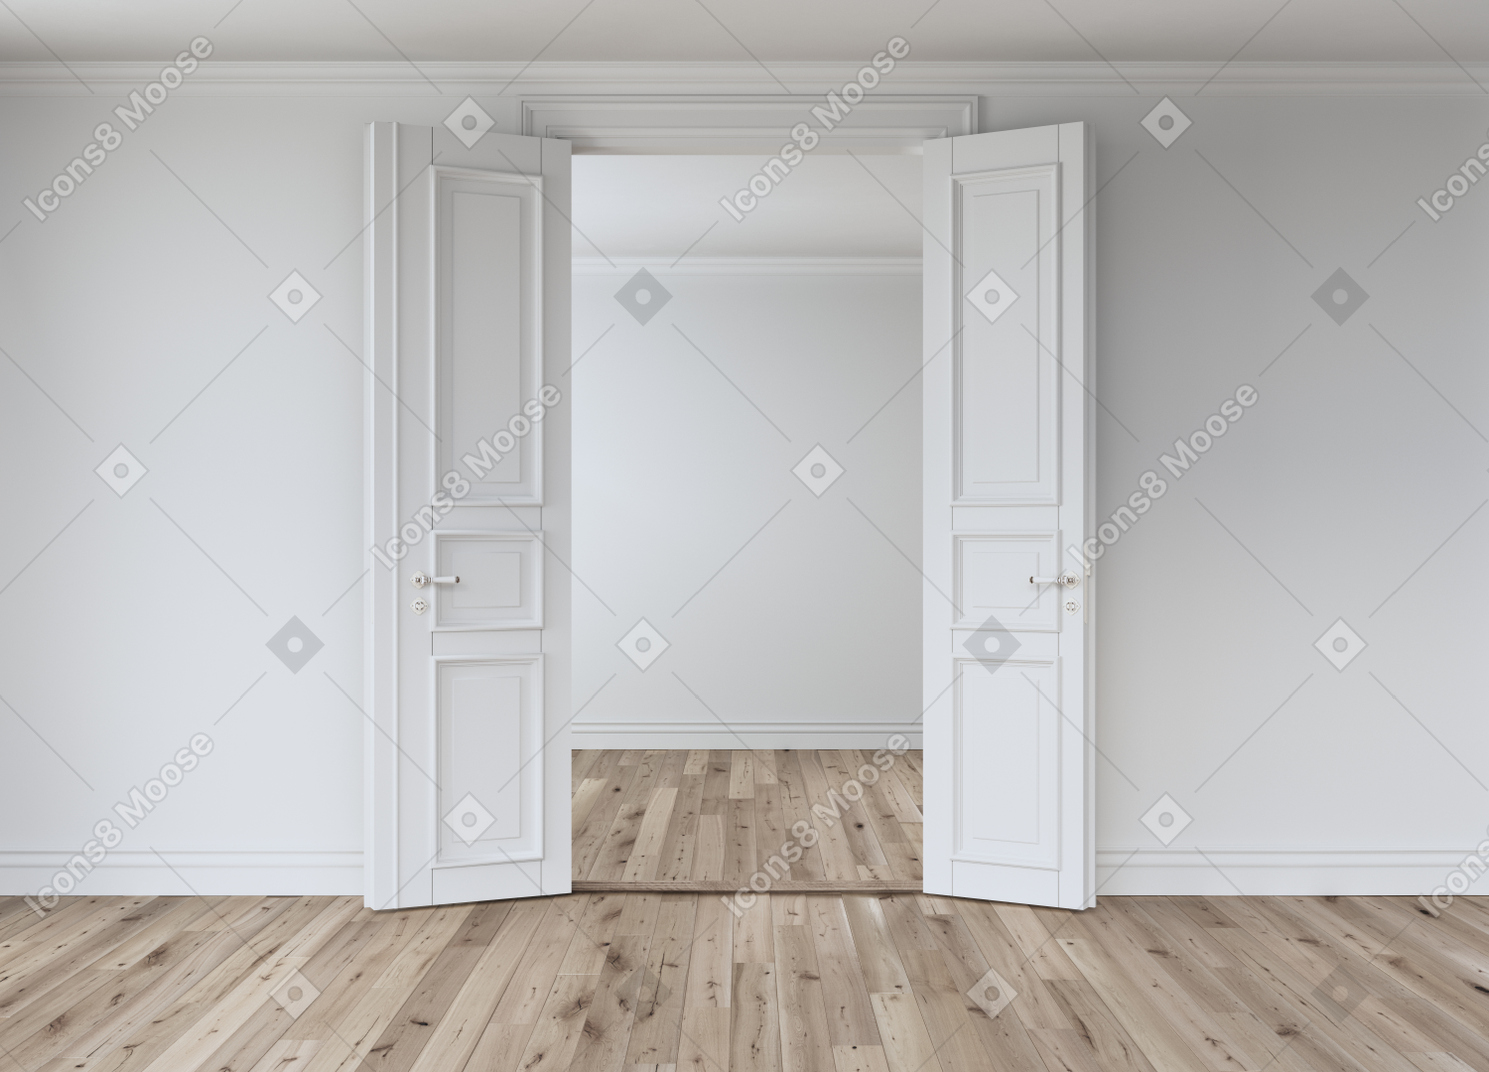 両開きドアが開いた白い部屋